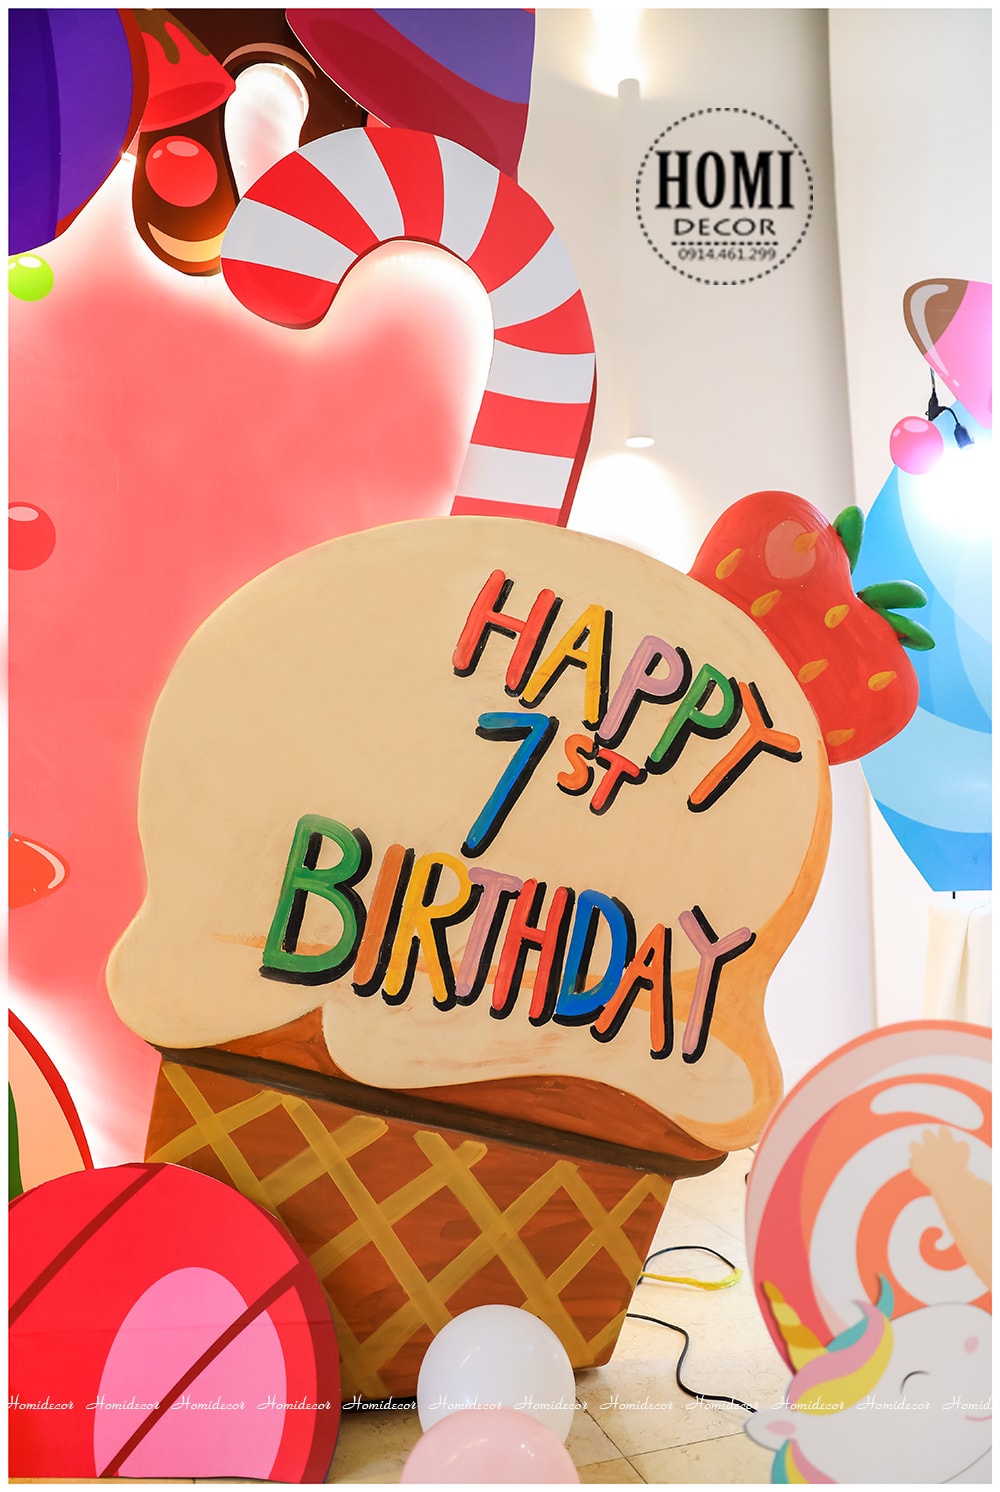 Trang trí sinh nhật bé gái chủ đề kem bánh kẹo - Candy